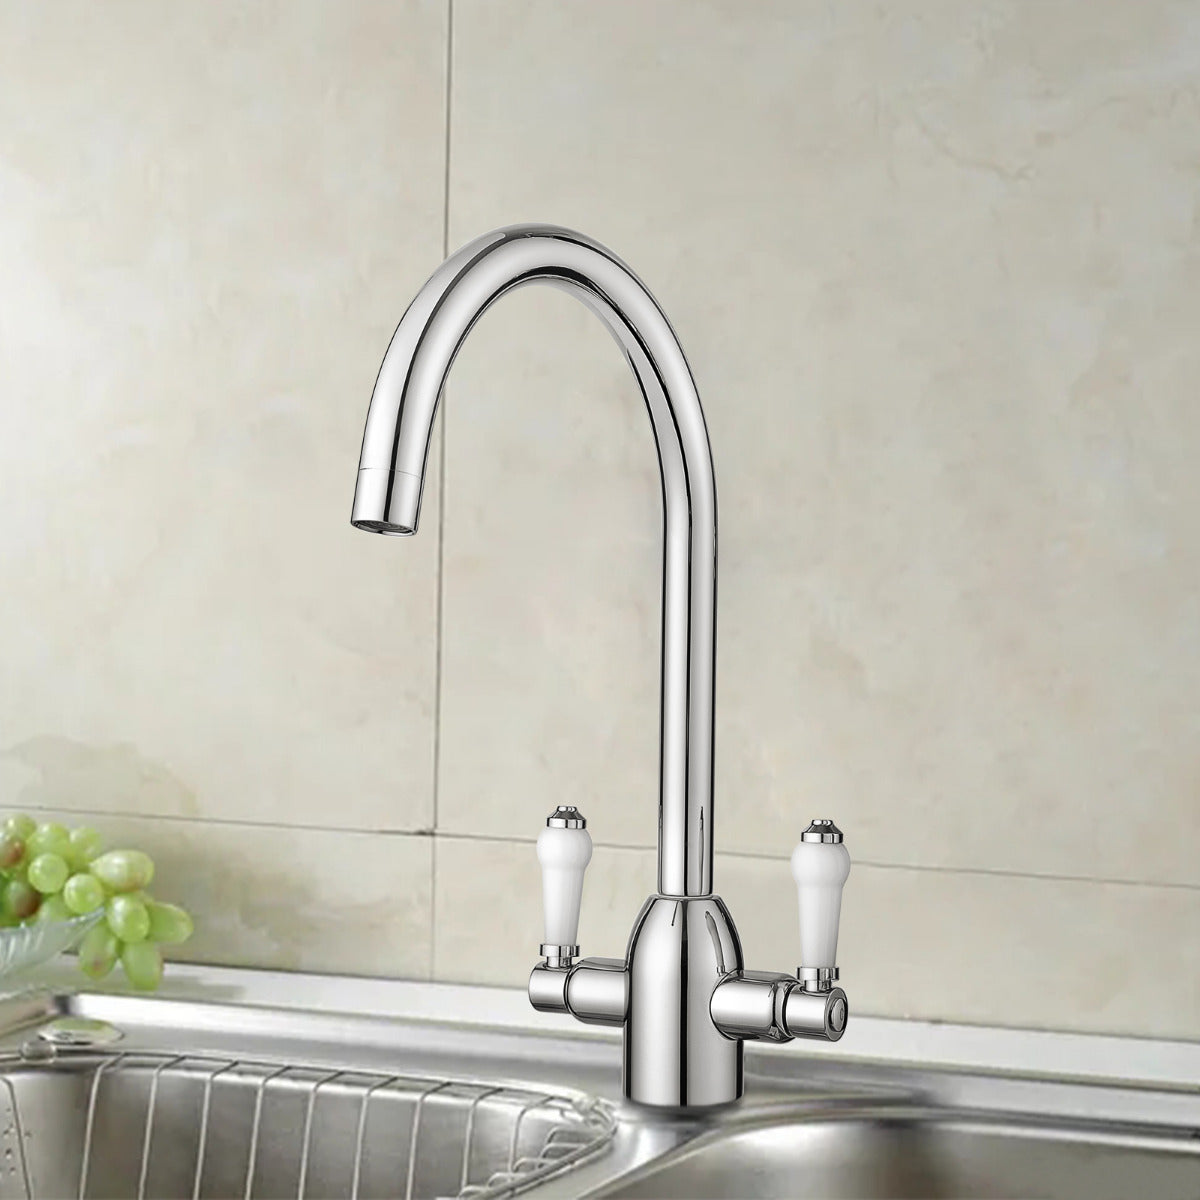 JassferryJASSFERRY New Kitchen Sink Mixer Taps Two Handles Swivel Spout Chrome PolishedKitchen taps